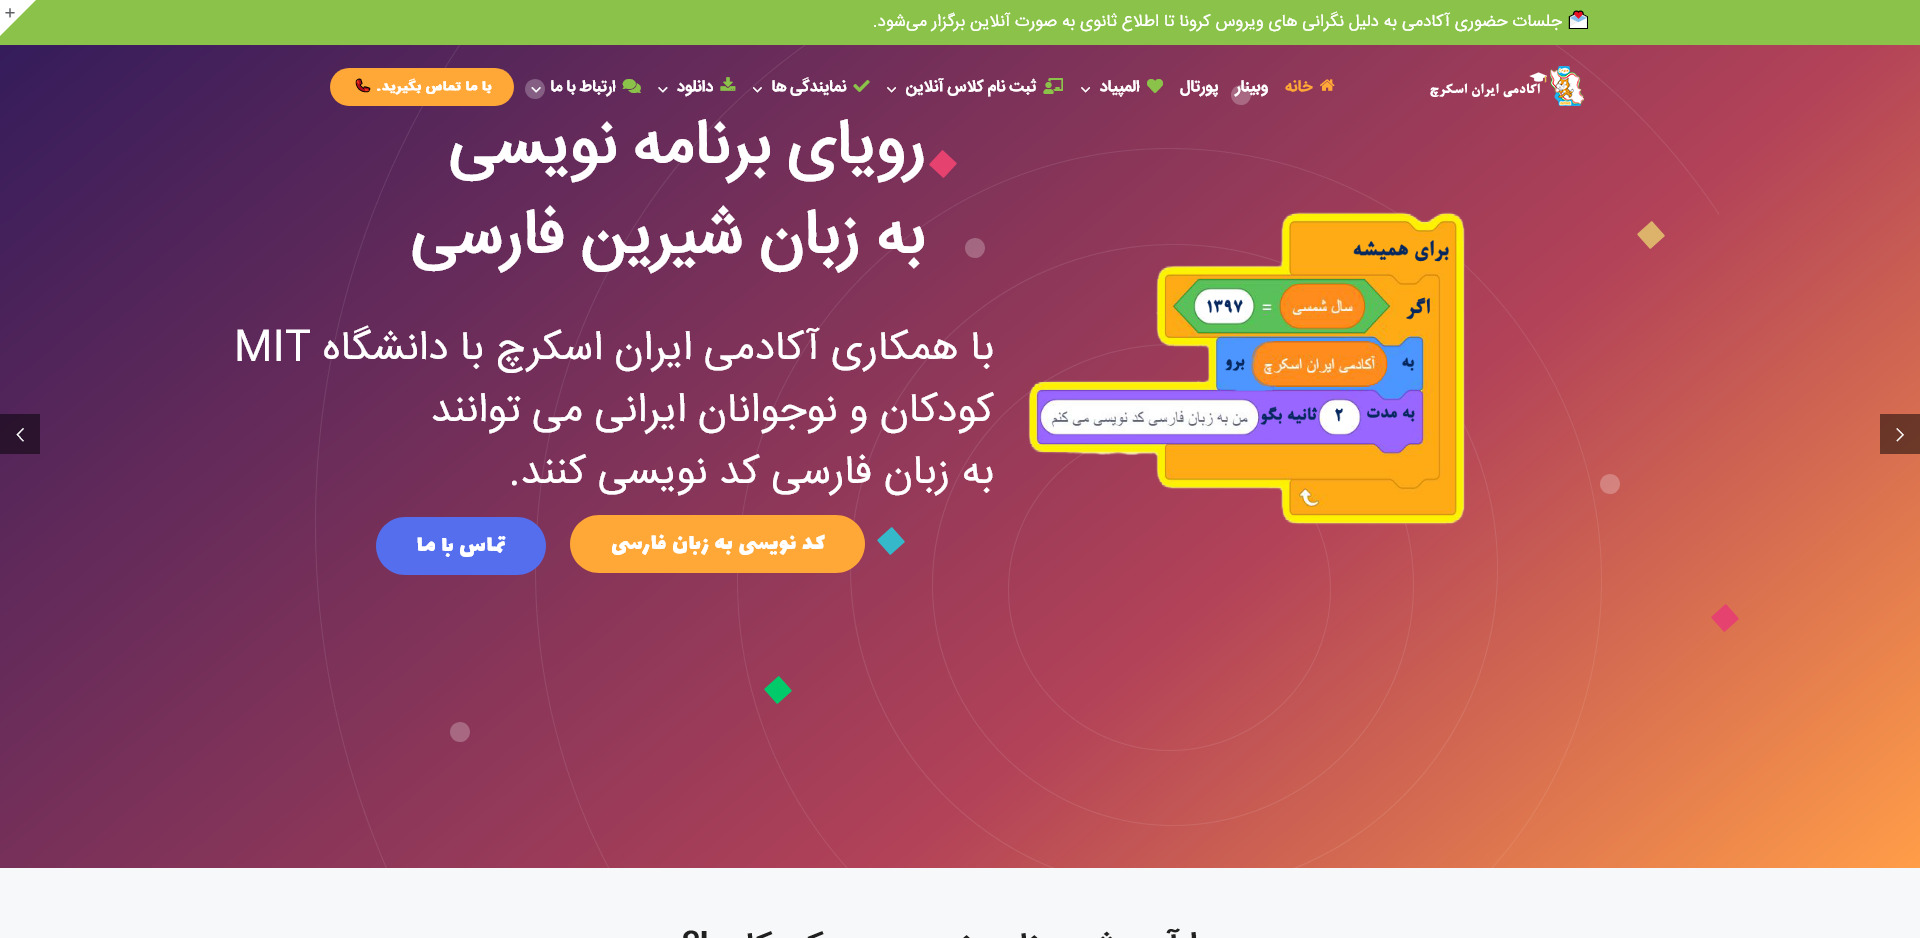 هدر وبسایت محتوا و خدماتی آموزش برنامه نویسی به کودکان اسفند ۱۳۹۹